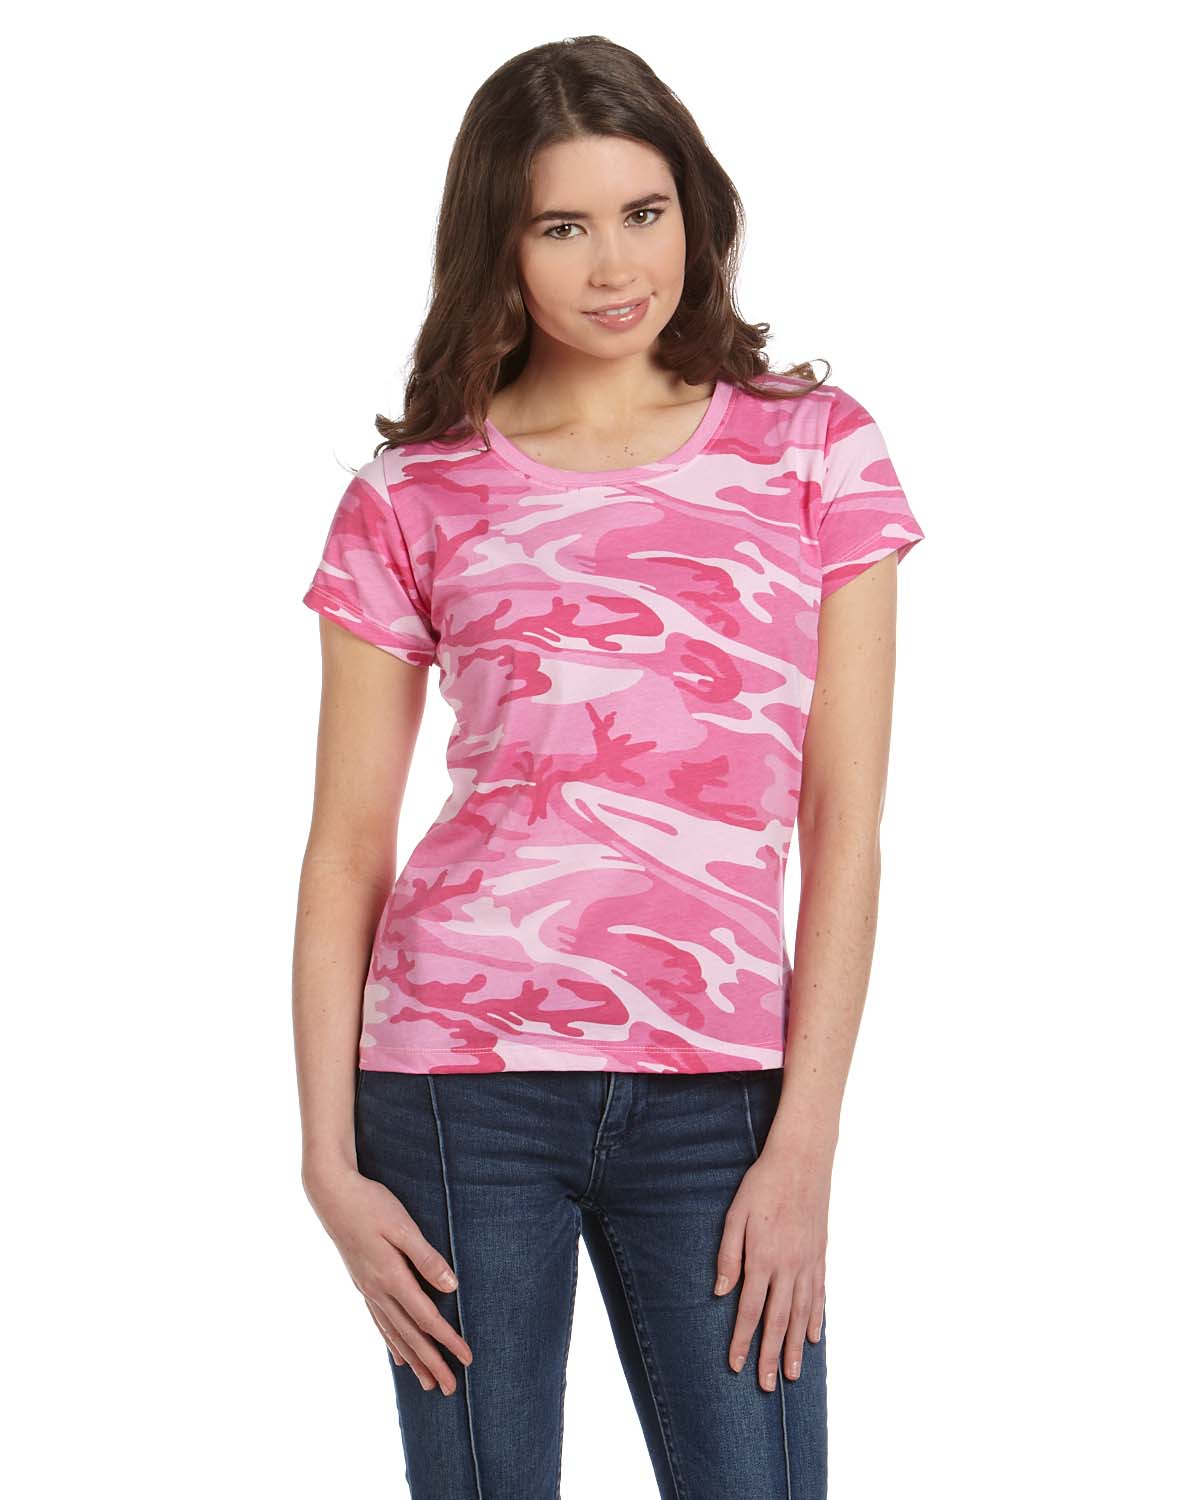 Code V 3665 Women's Camouflage T-Shirt - Shirtmax